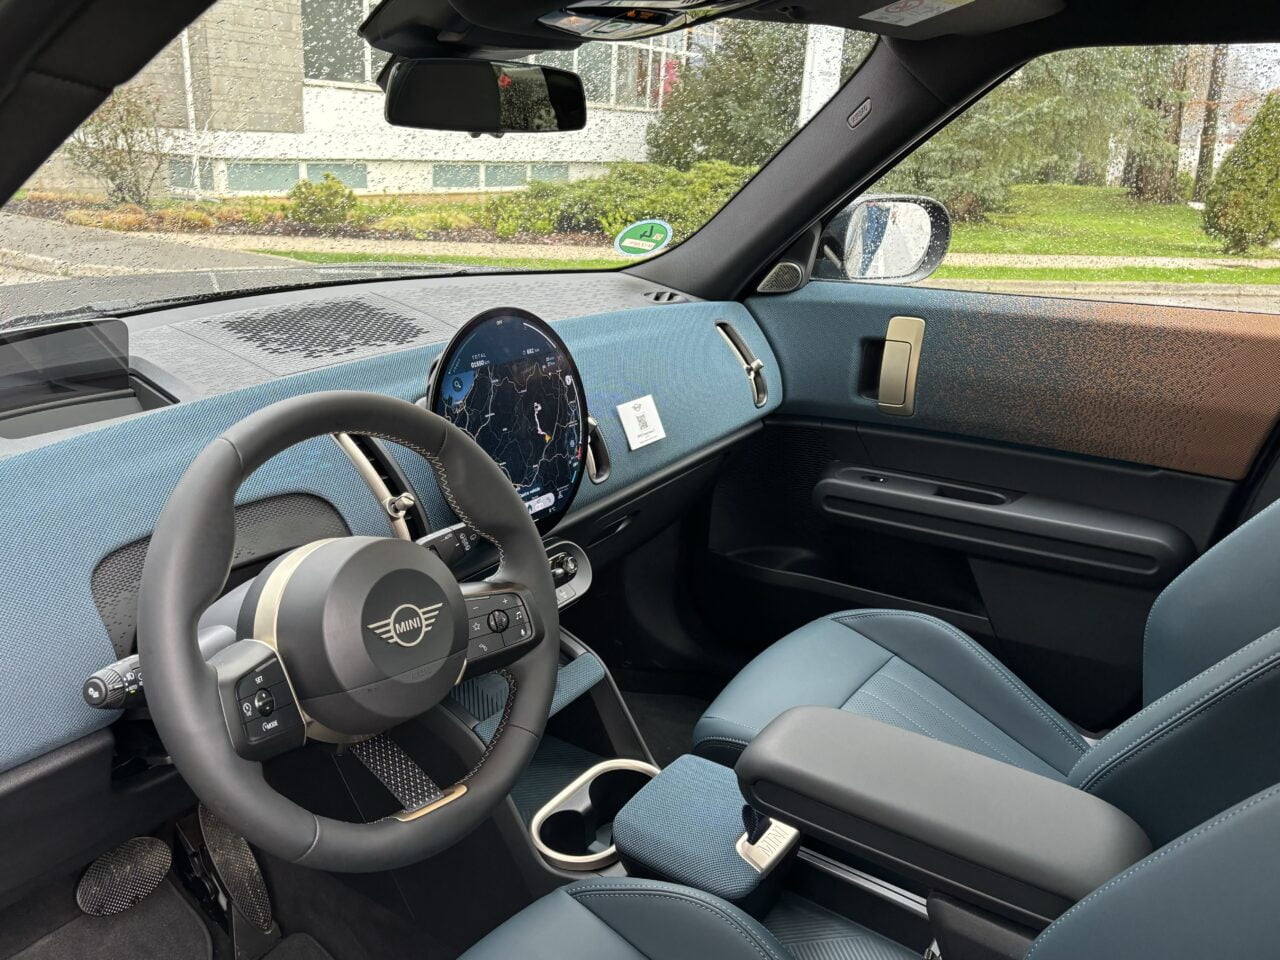 Wnętrze nowoczesnego samochodu z widokiem na kierownicę, deski rozdzielczej, wyświetlacz nawigacyjny i część przednich foteli, wykonane z materiałów w odcieniach szarości i niebieskiego.